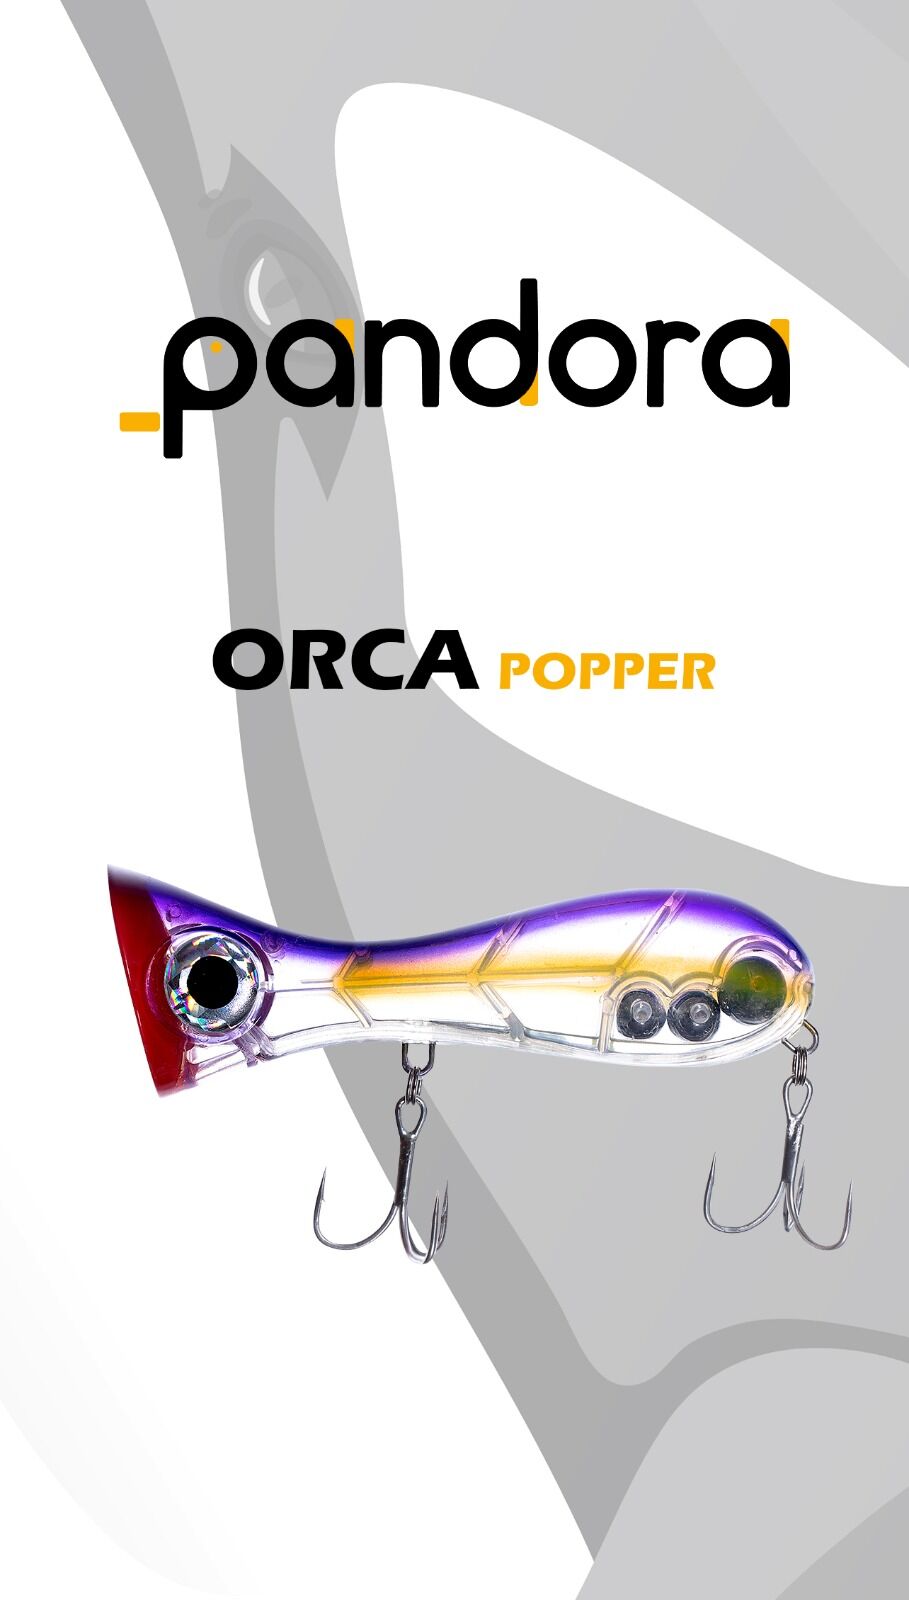 Pandora Orca Popper